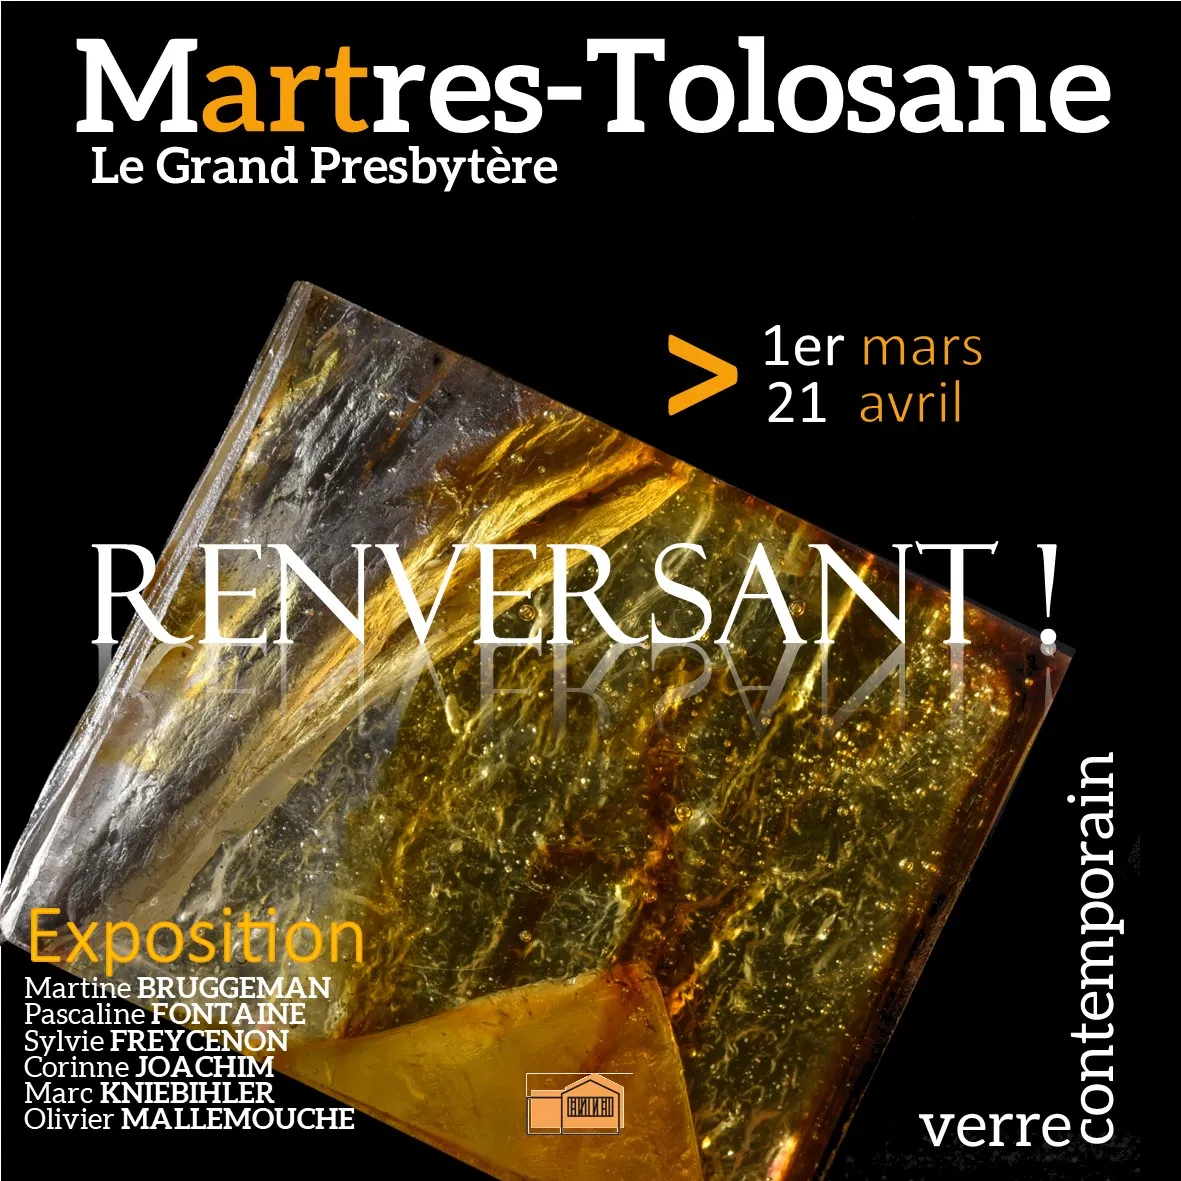 Image qui illustre: Exposition "renversant !" à Martres-Tolosane - 0